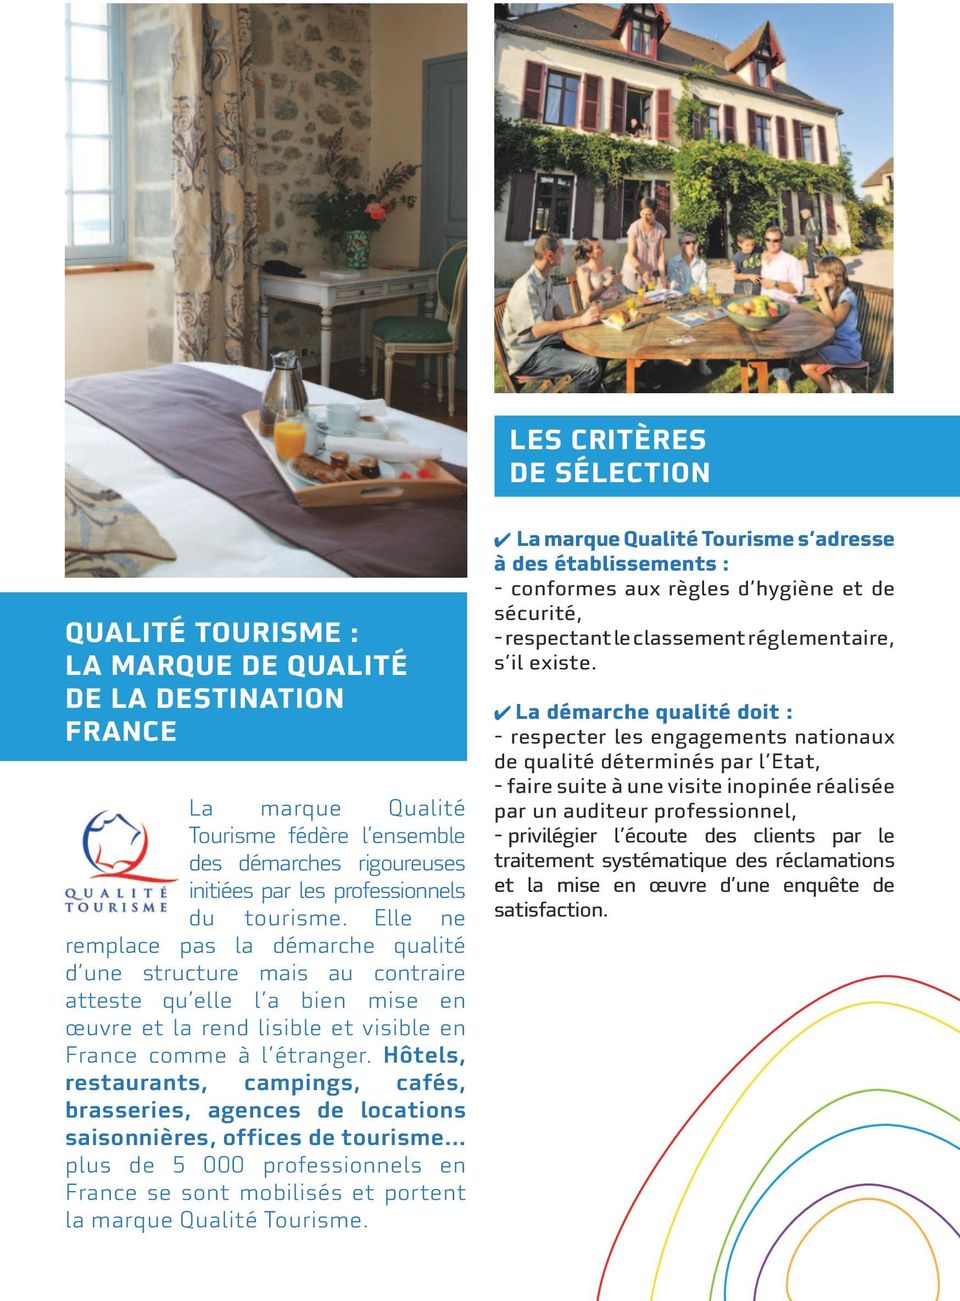 Hôtels, restaurants, campings, cafés, brasseries, agences de locations saisonnières, offices de tourisme plus de 5 000 professionnels en France se sont mobilisés et portent la marque Qualité Tourisme.